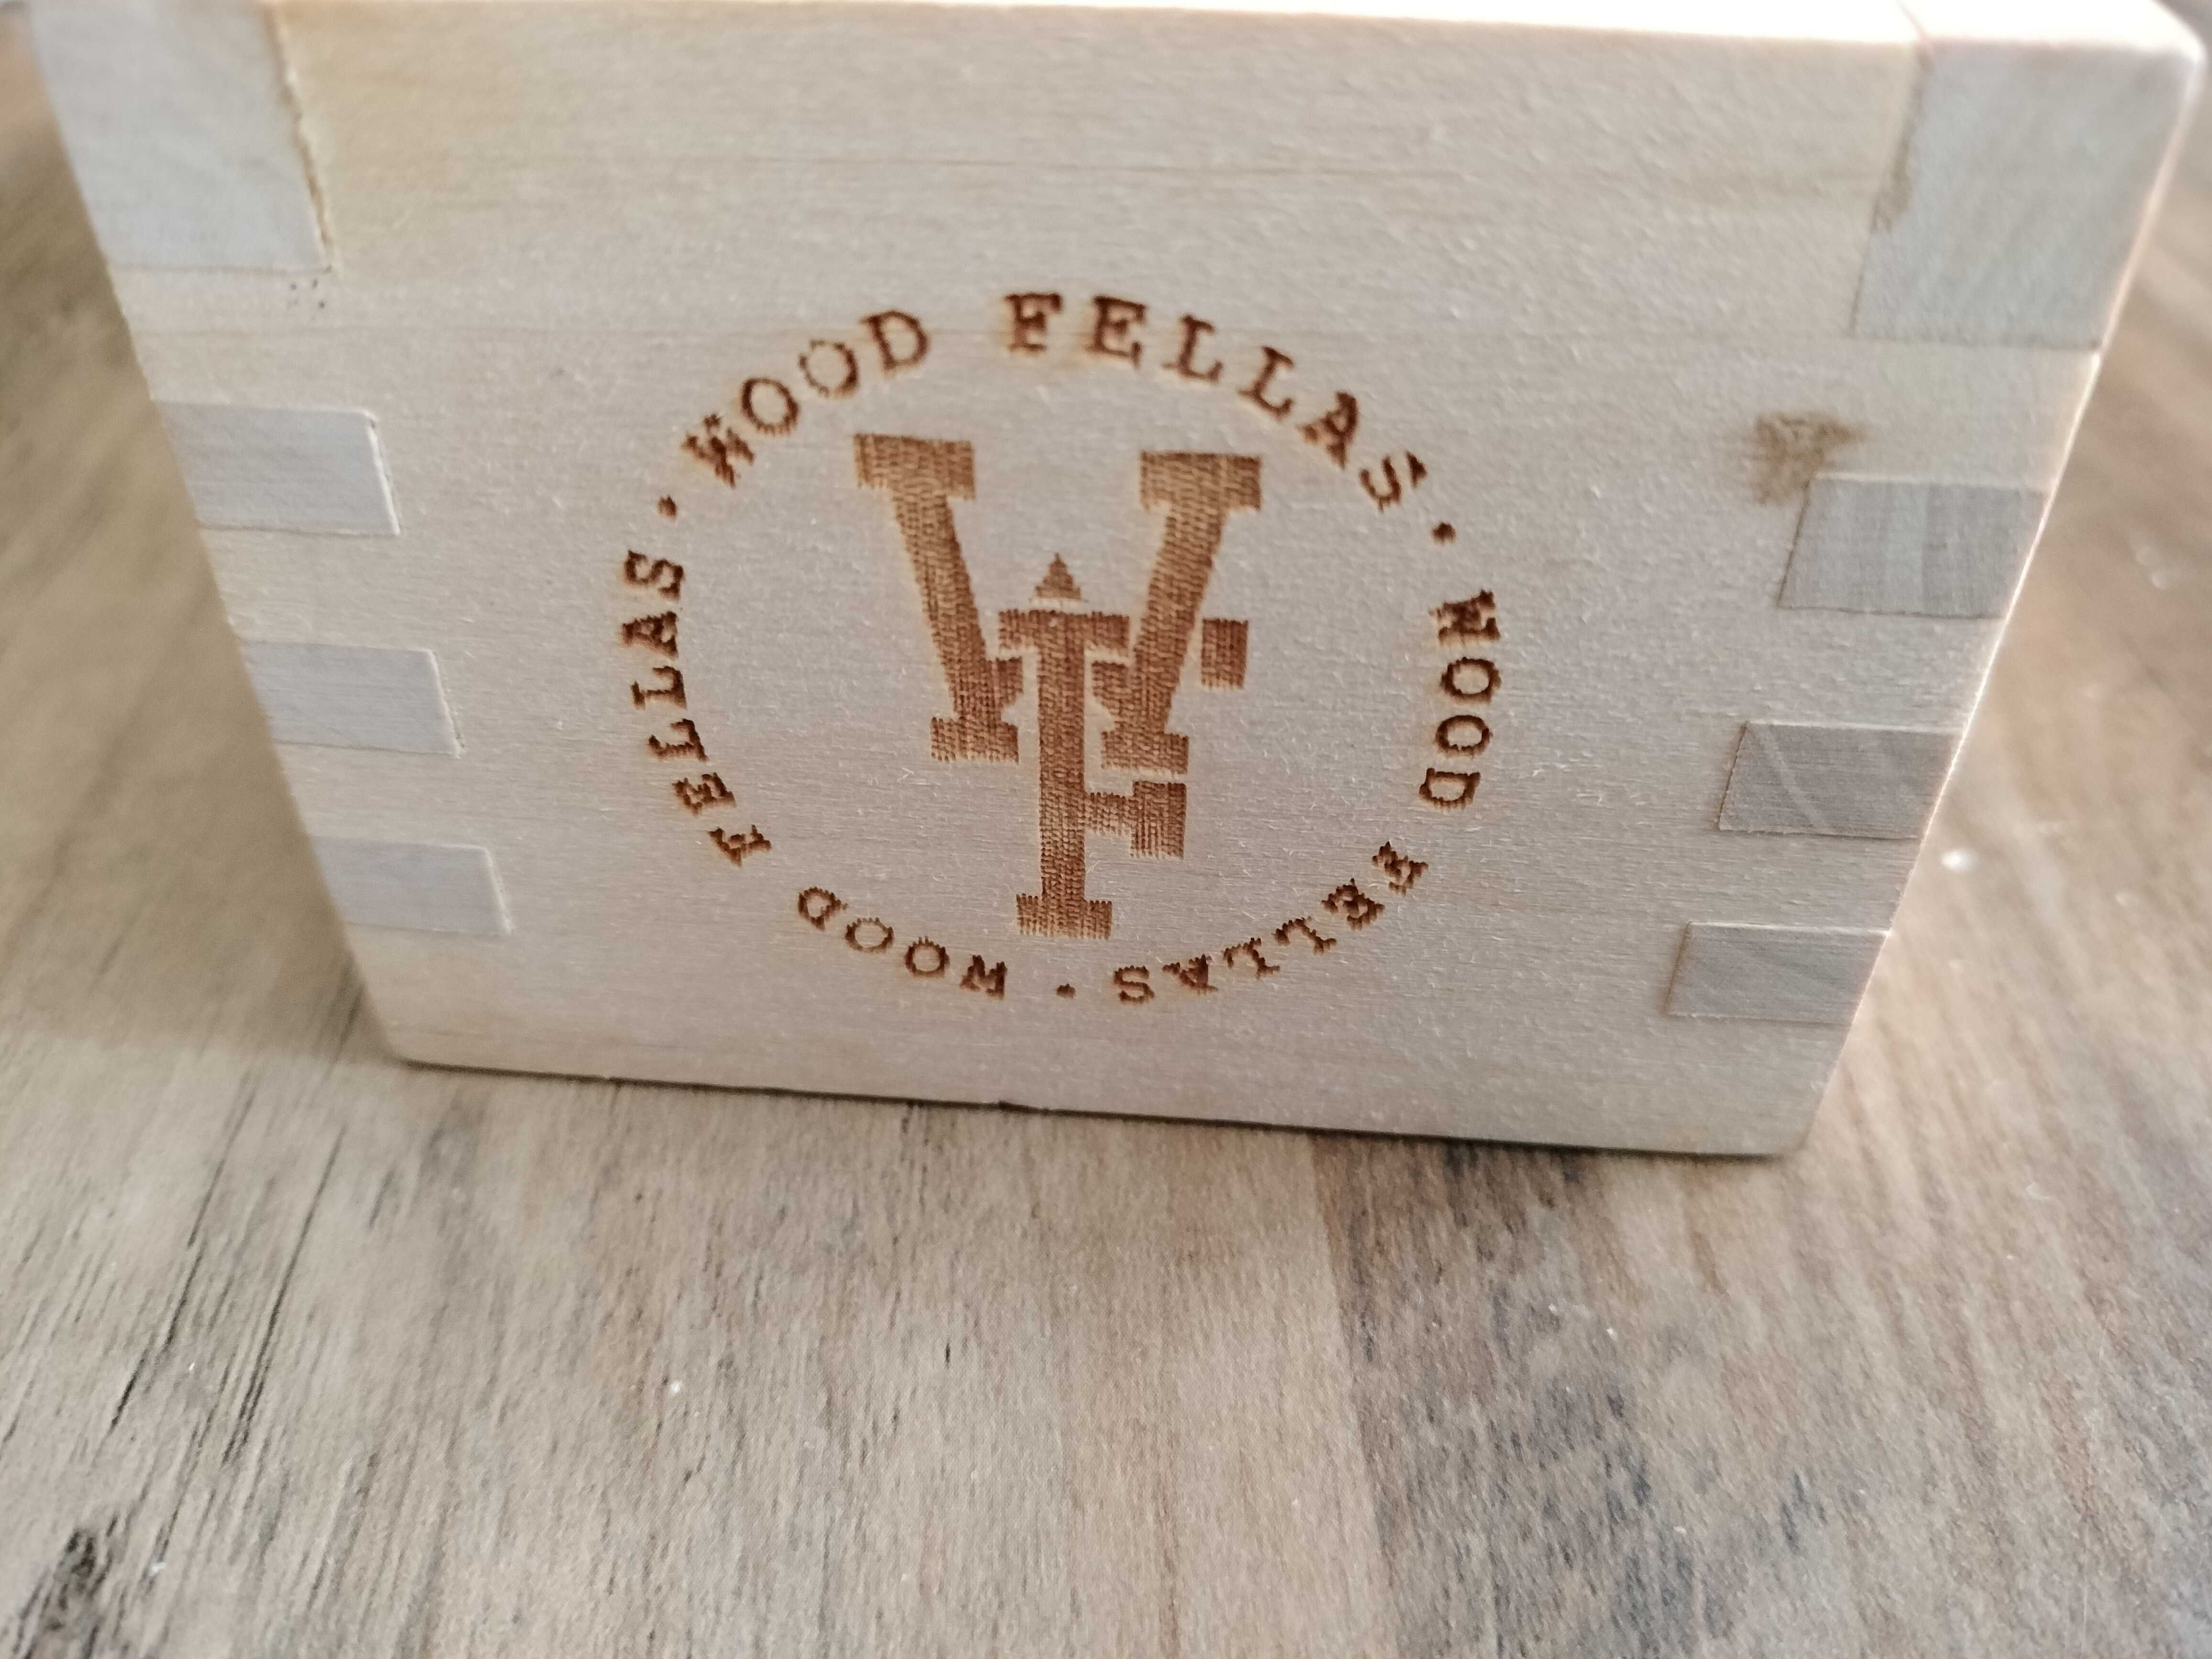 drewniane pudełko do okularów Wood Fellas